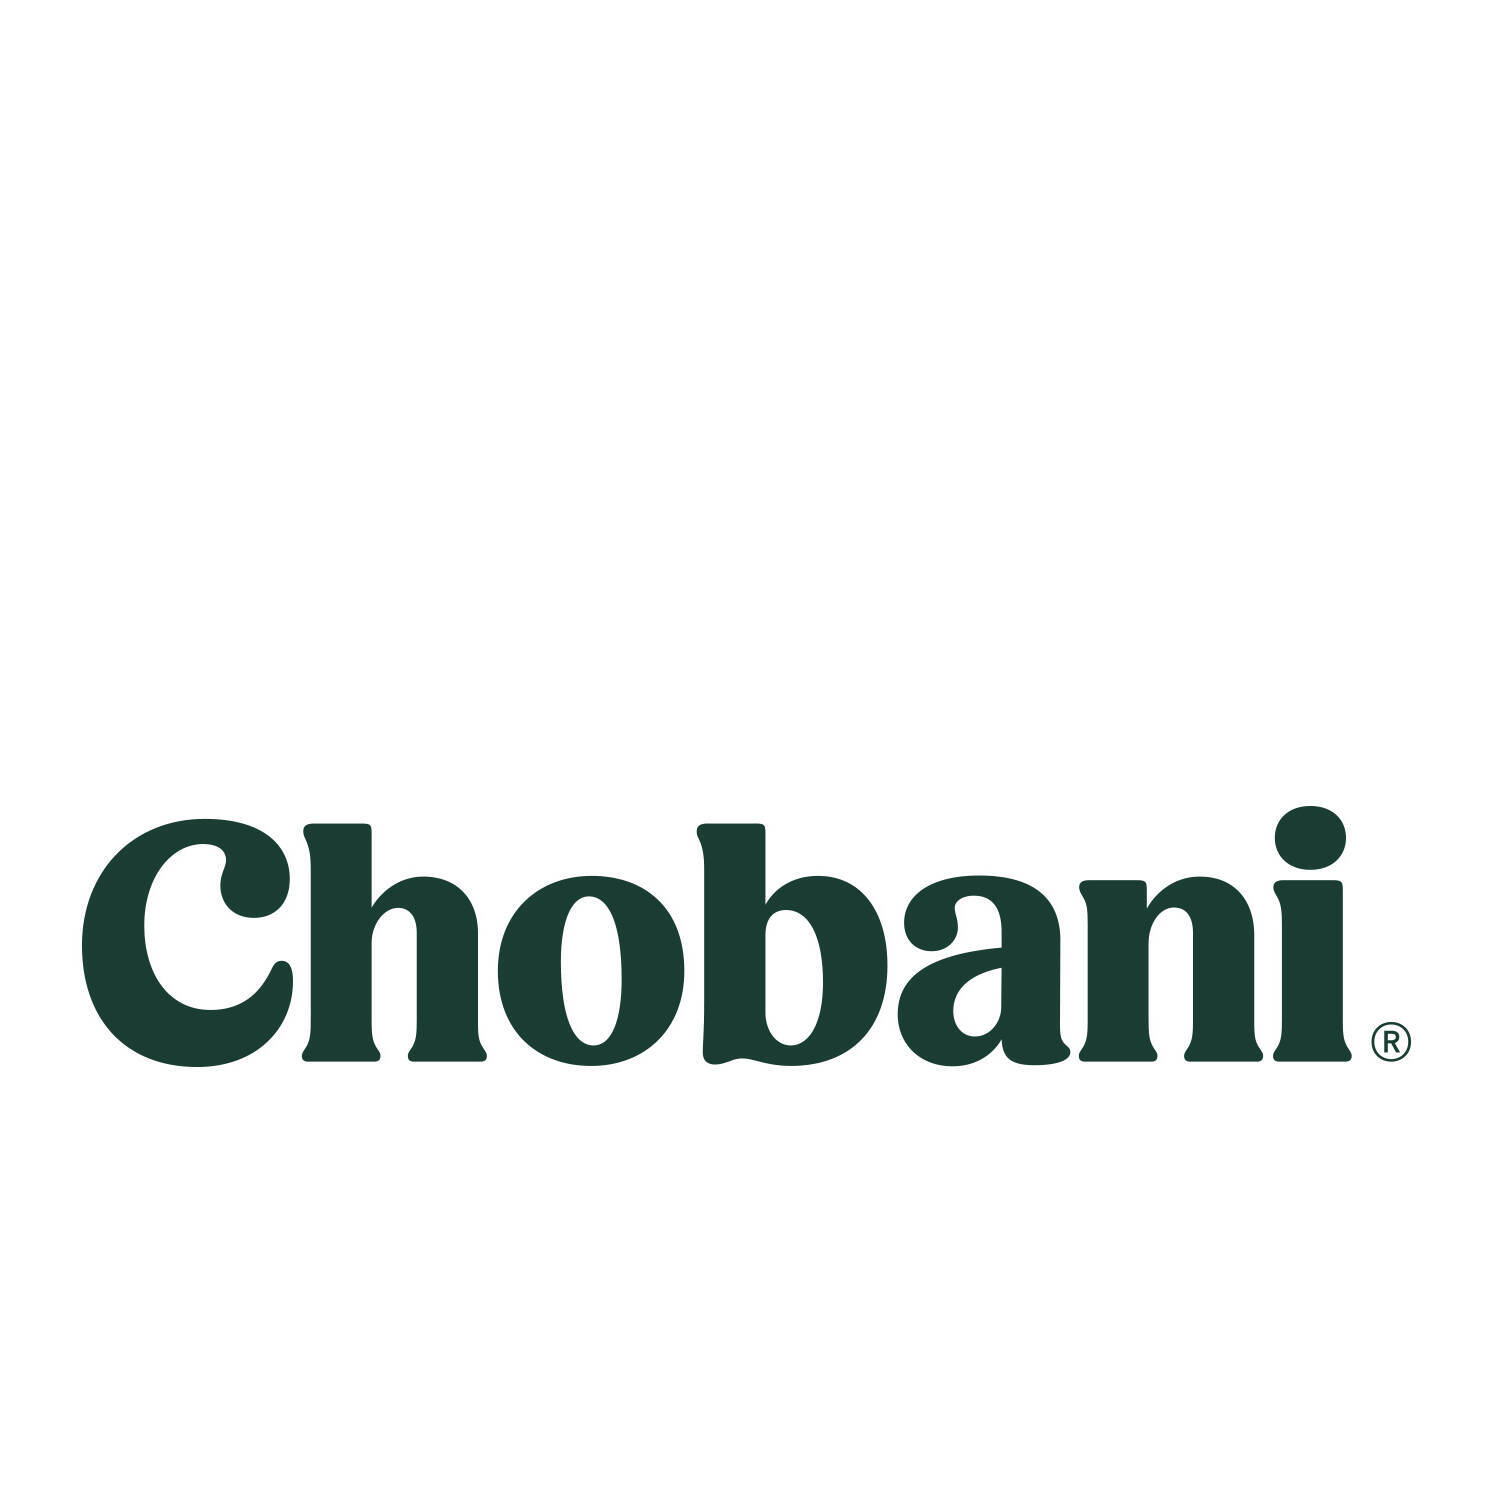  Chobani